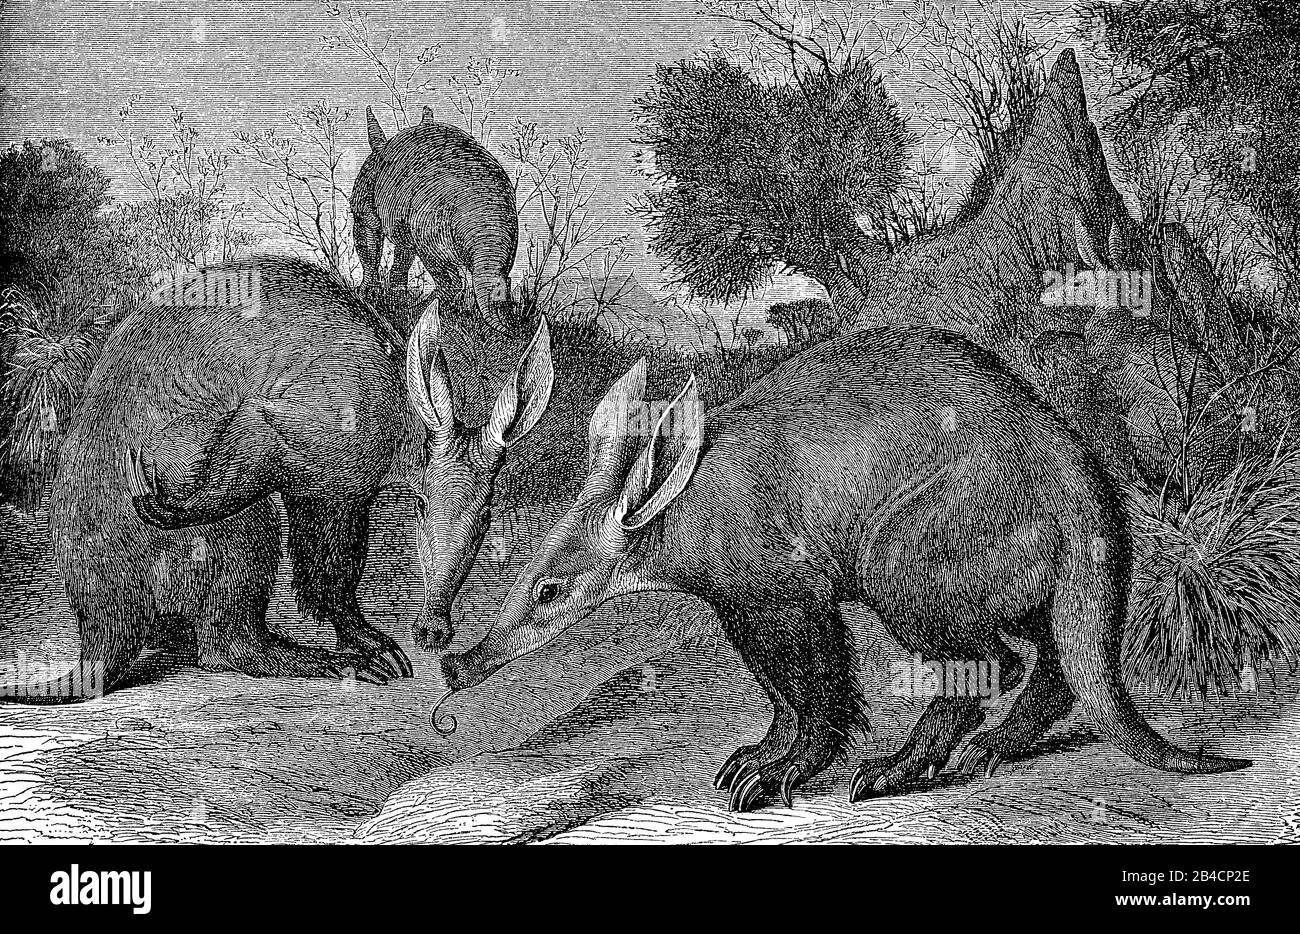 Paysage sauvage avec un troupeau d'aardvarks, mammifère nocturne indigène à l'Afrique avec un museau de porc Banque D'Images